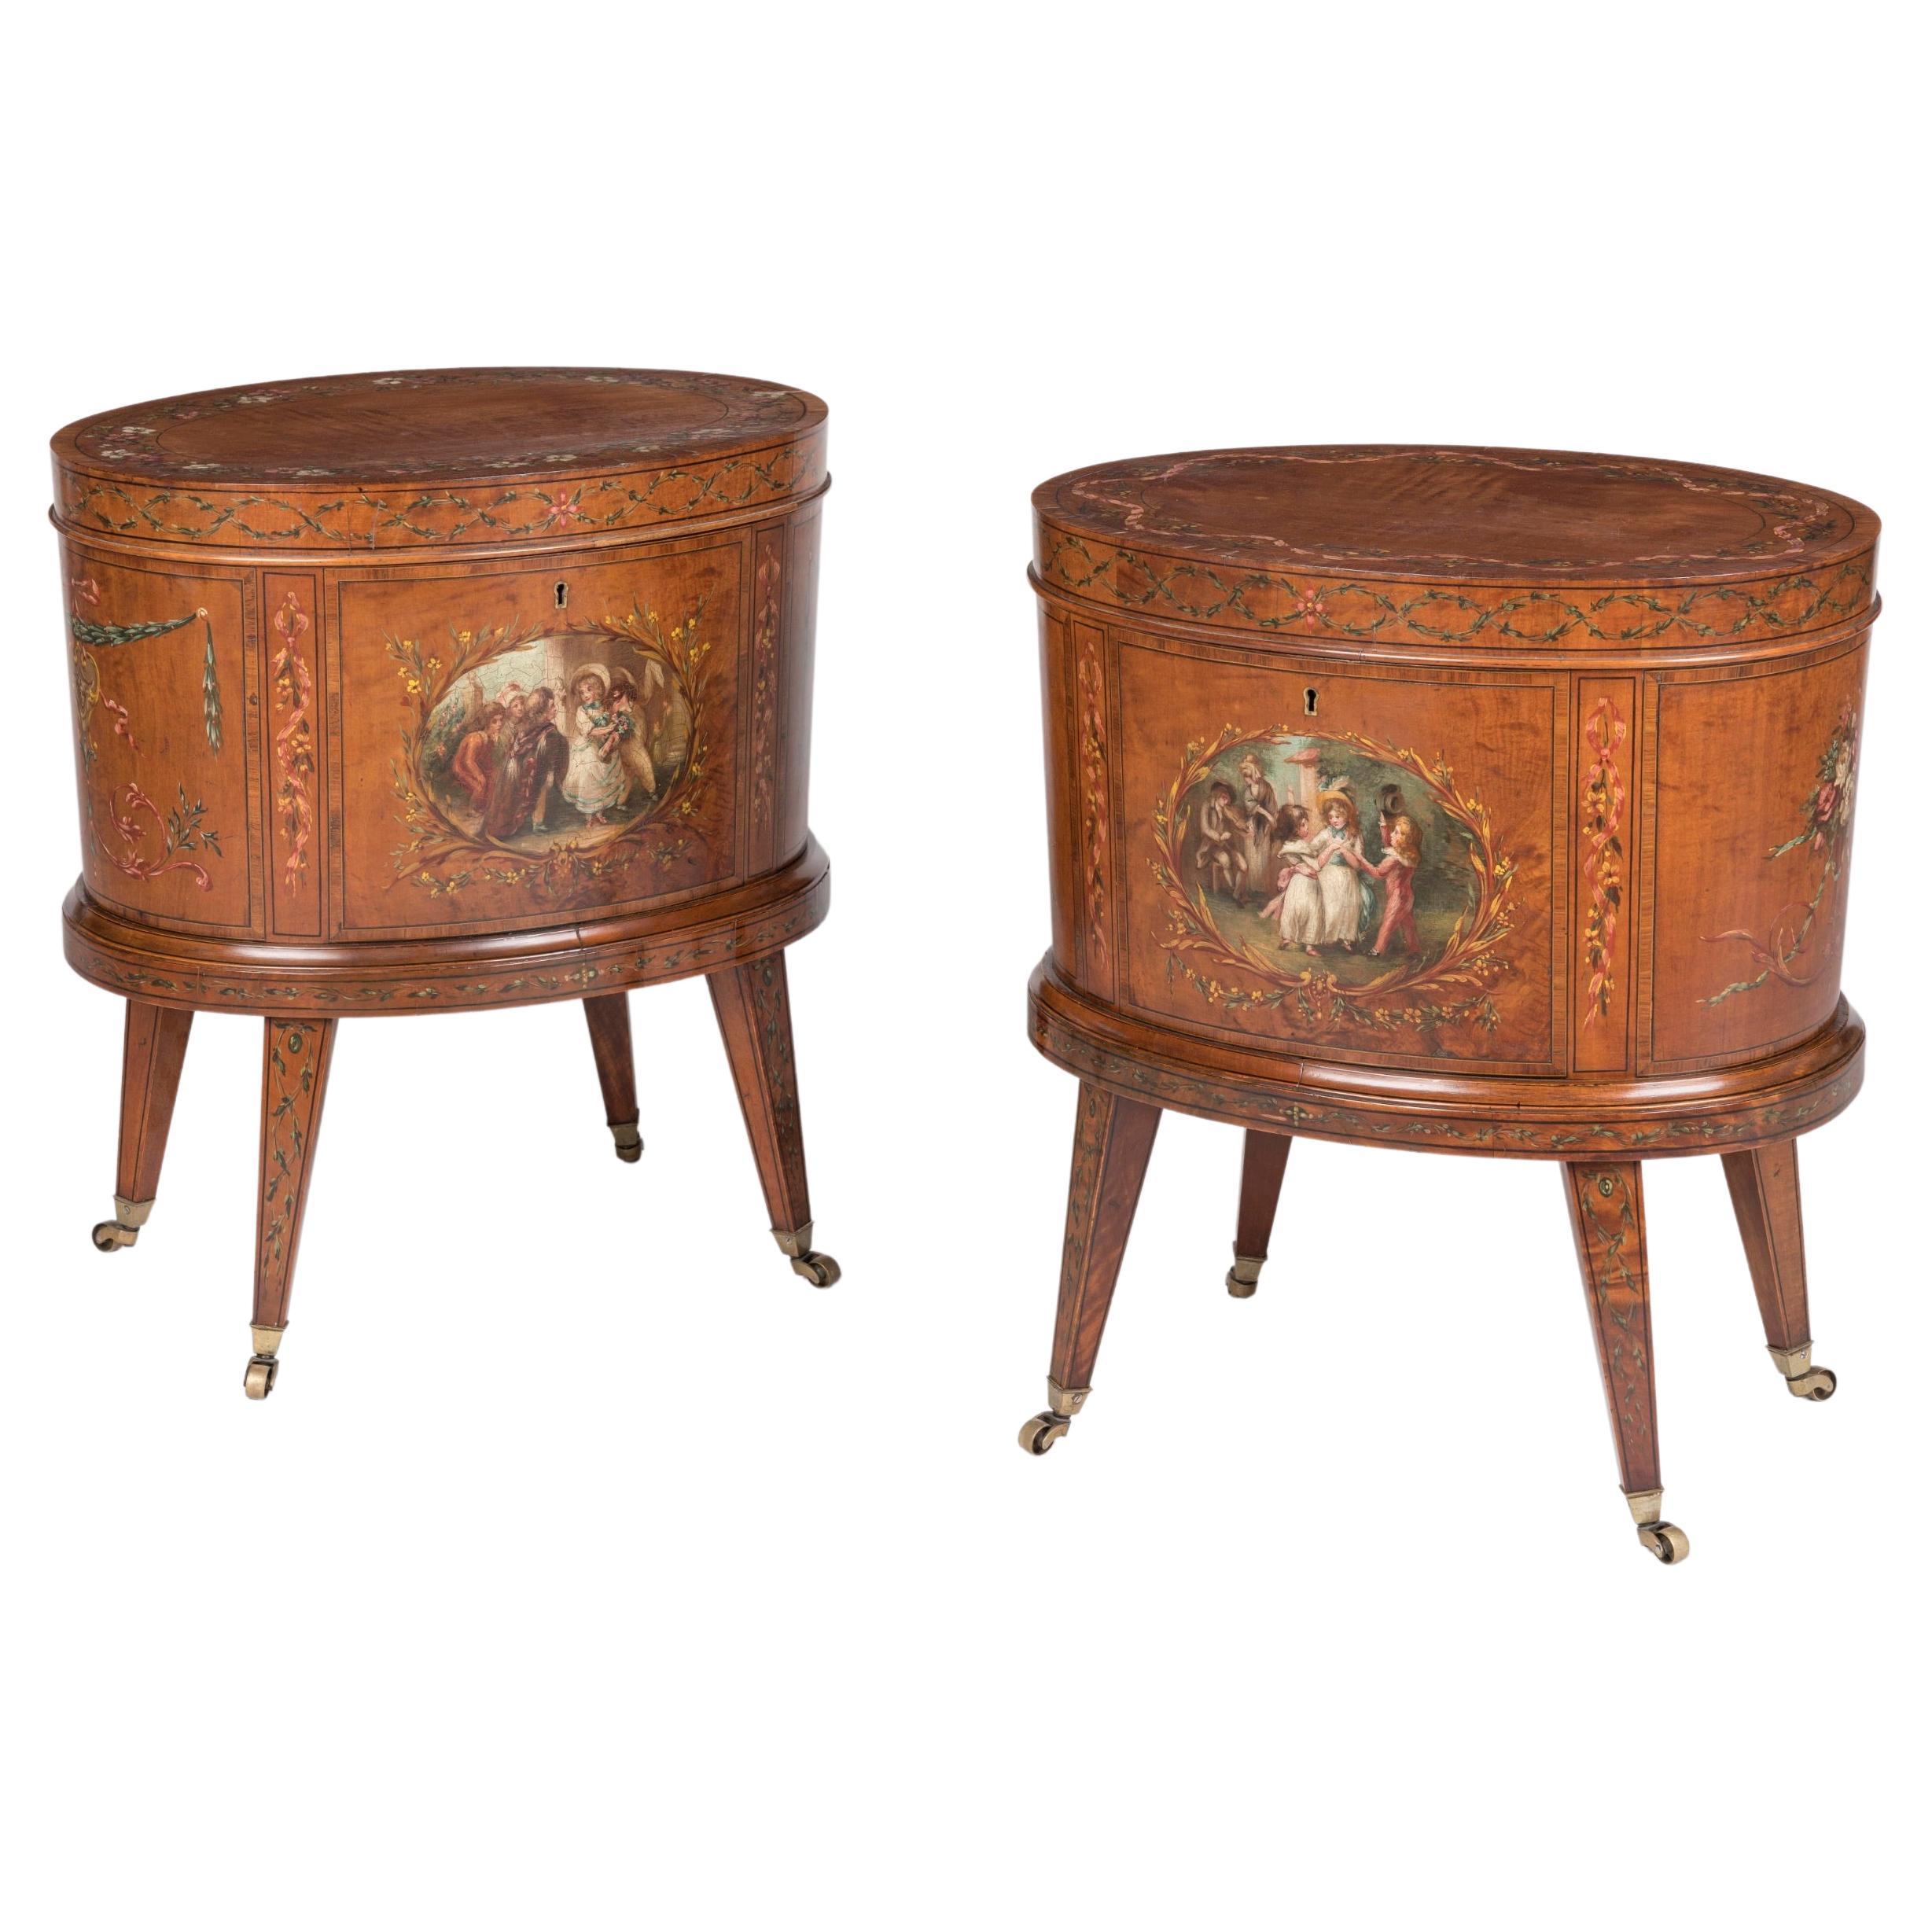 Seltenes Paar neoklassizistischer, handbemalter Weinkühler aus Seidenholz aus dem 19. Jahrhundert